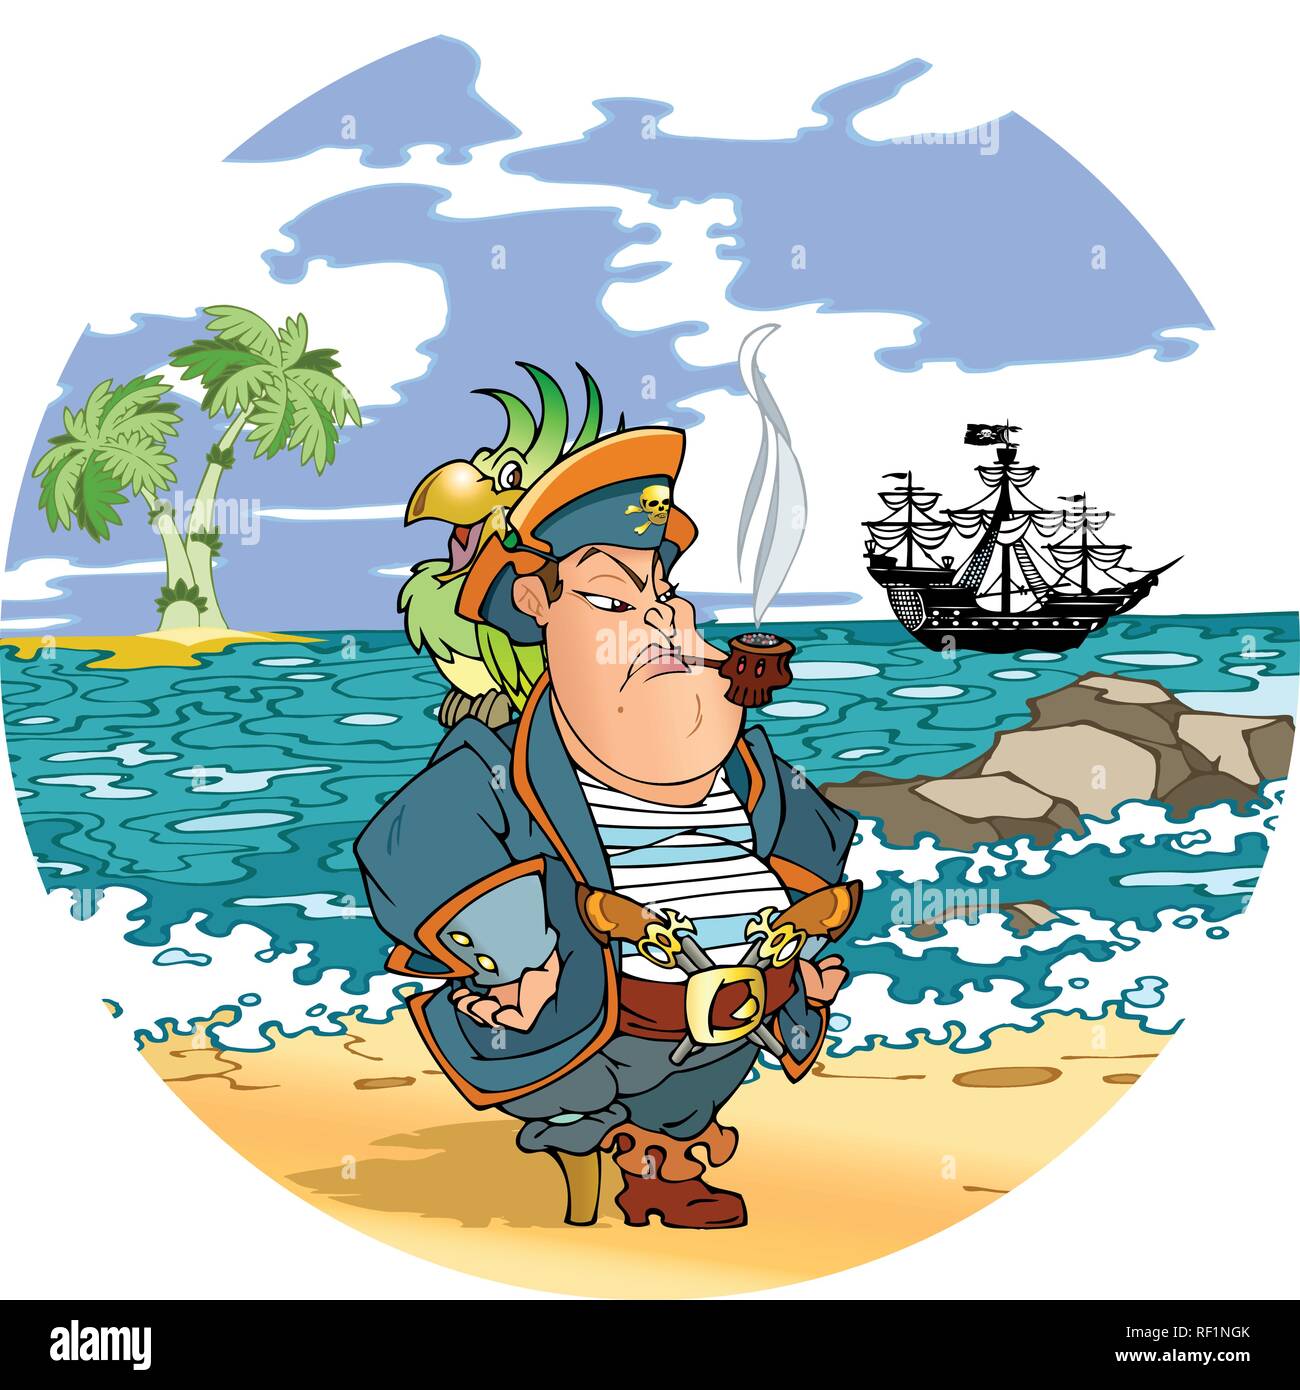 un dibujo infantil de un pirata con un loro en el hombro y una linterna en